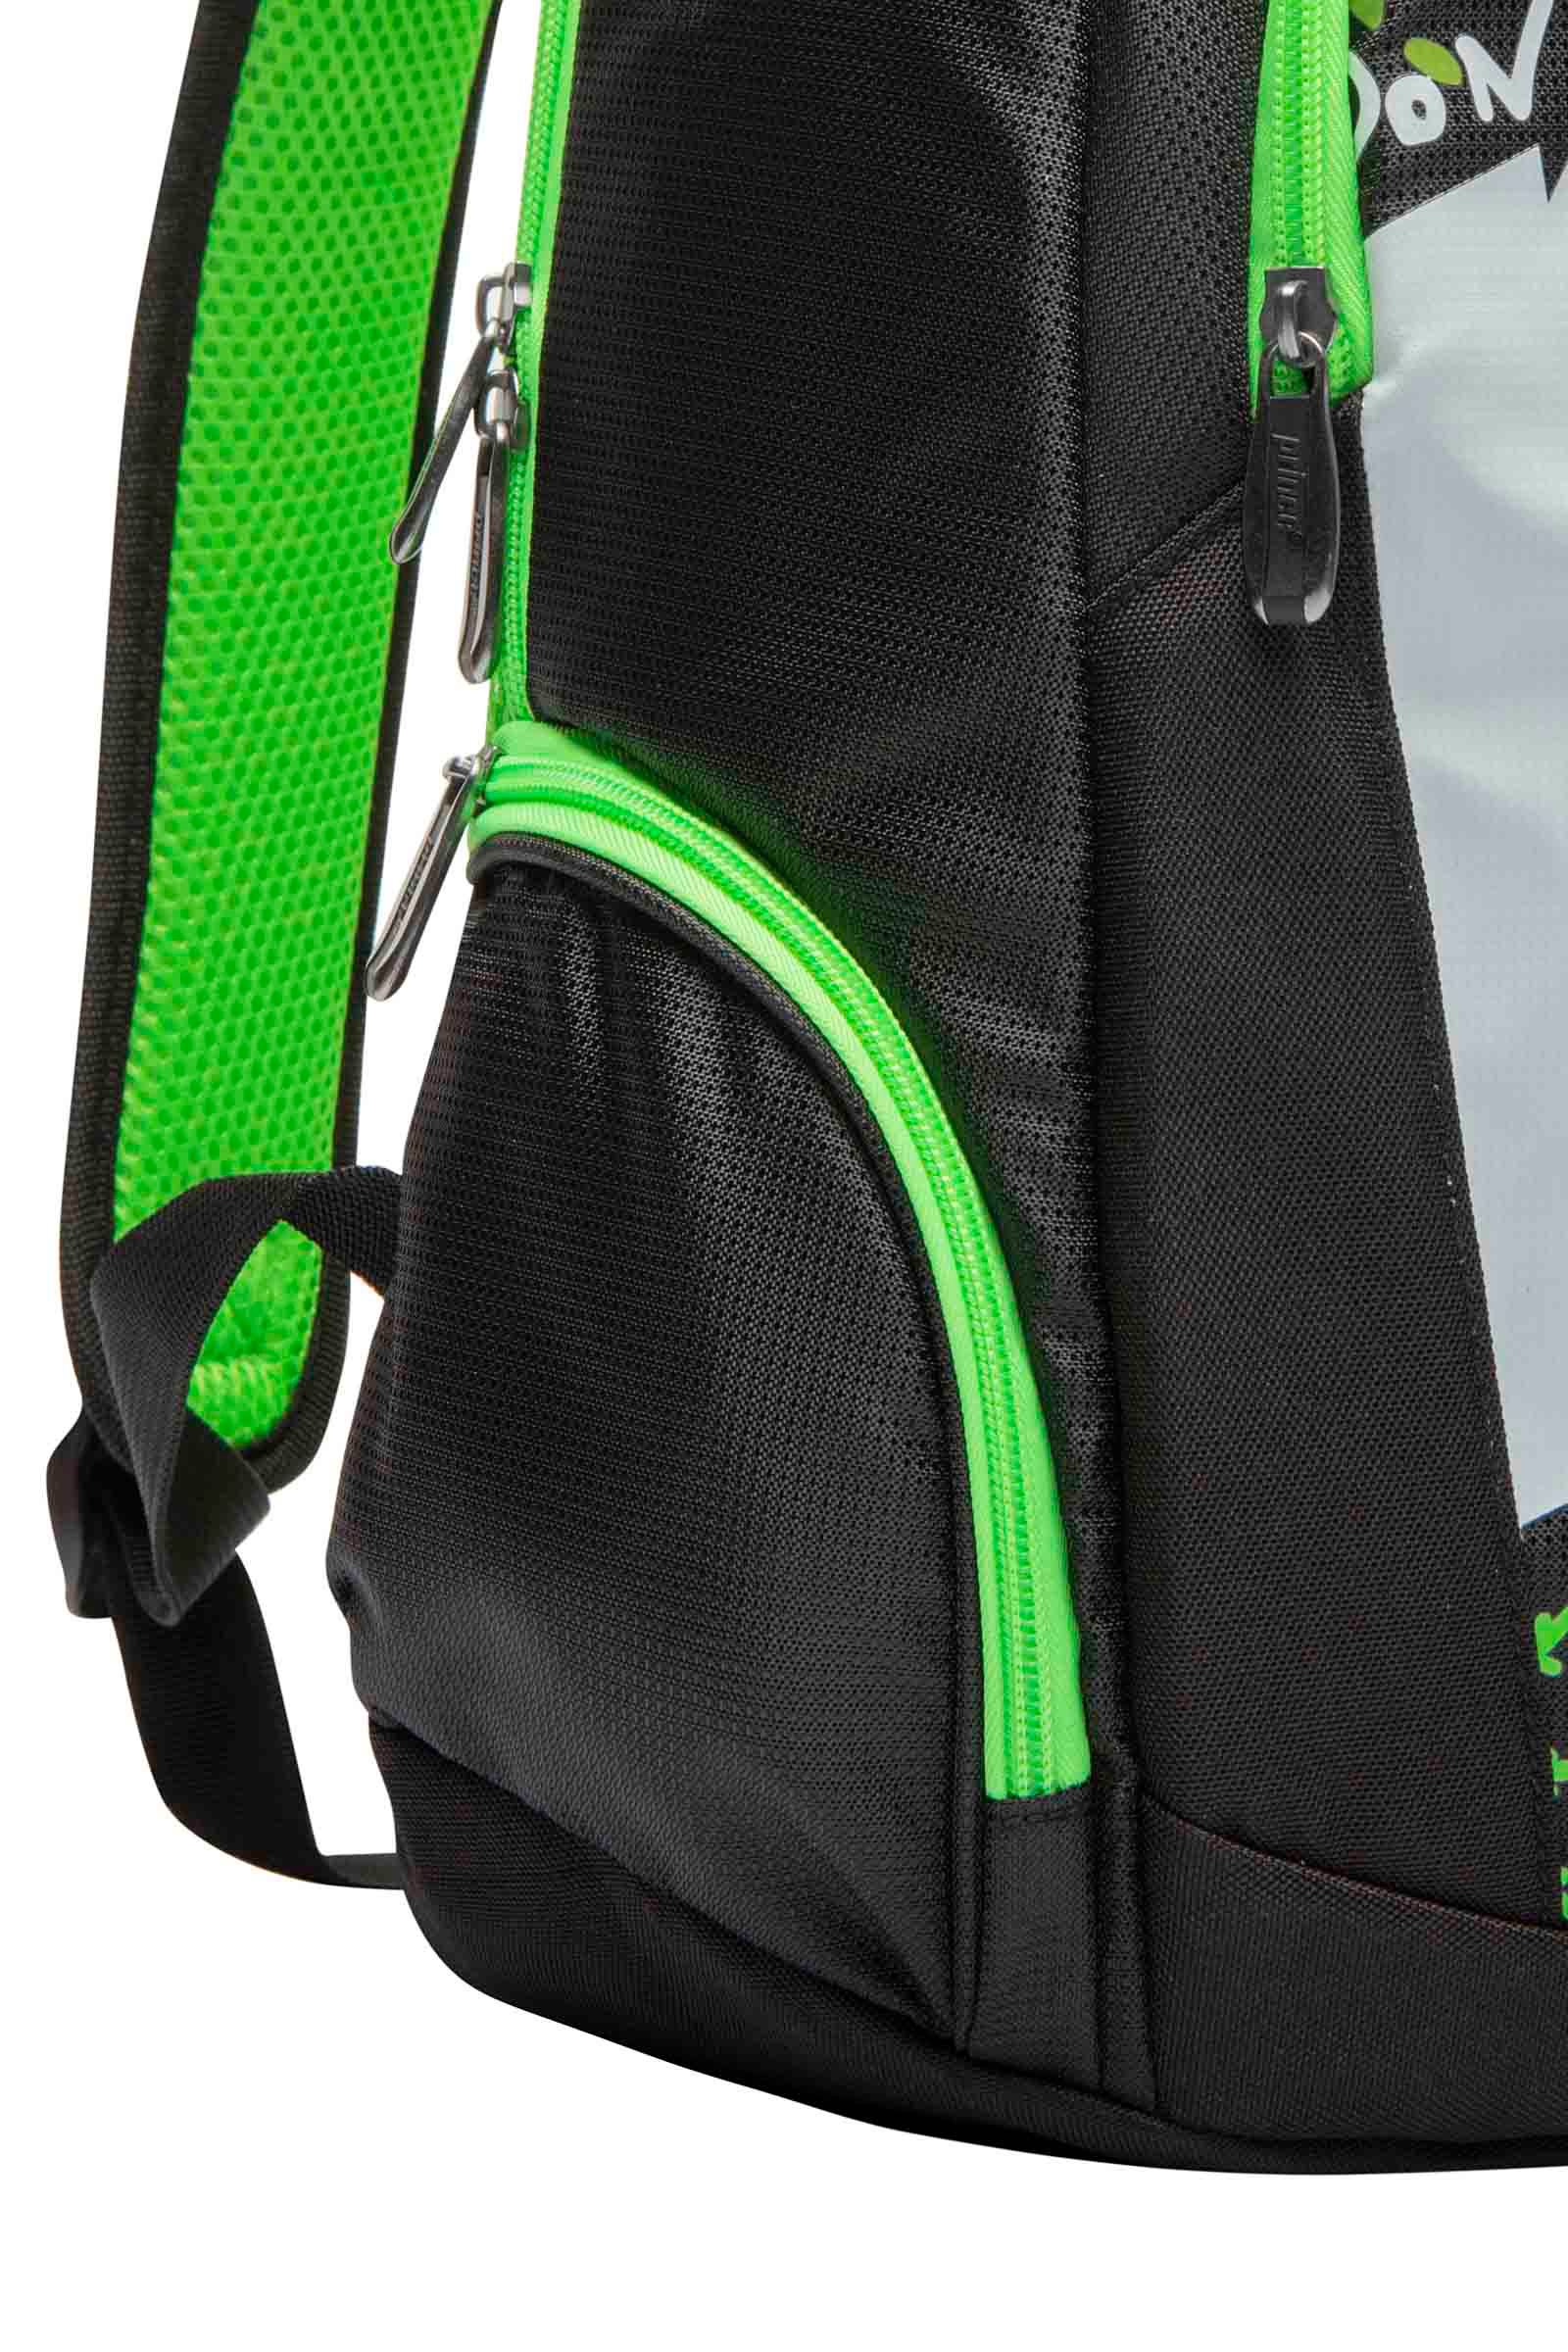 GRAFFITI BACKPACK PRINCE BY HYDROGEN - Junior - BLACK,GREEN - Hydrogen - Luxury Sportwear